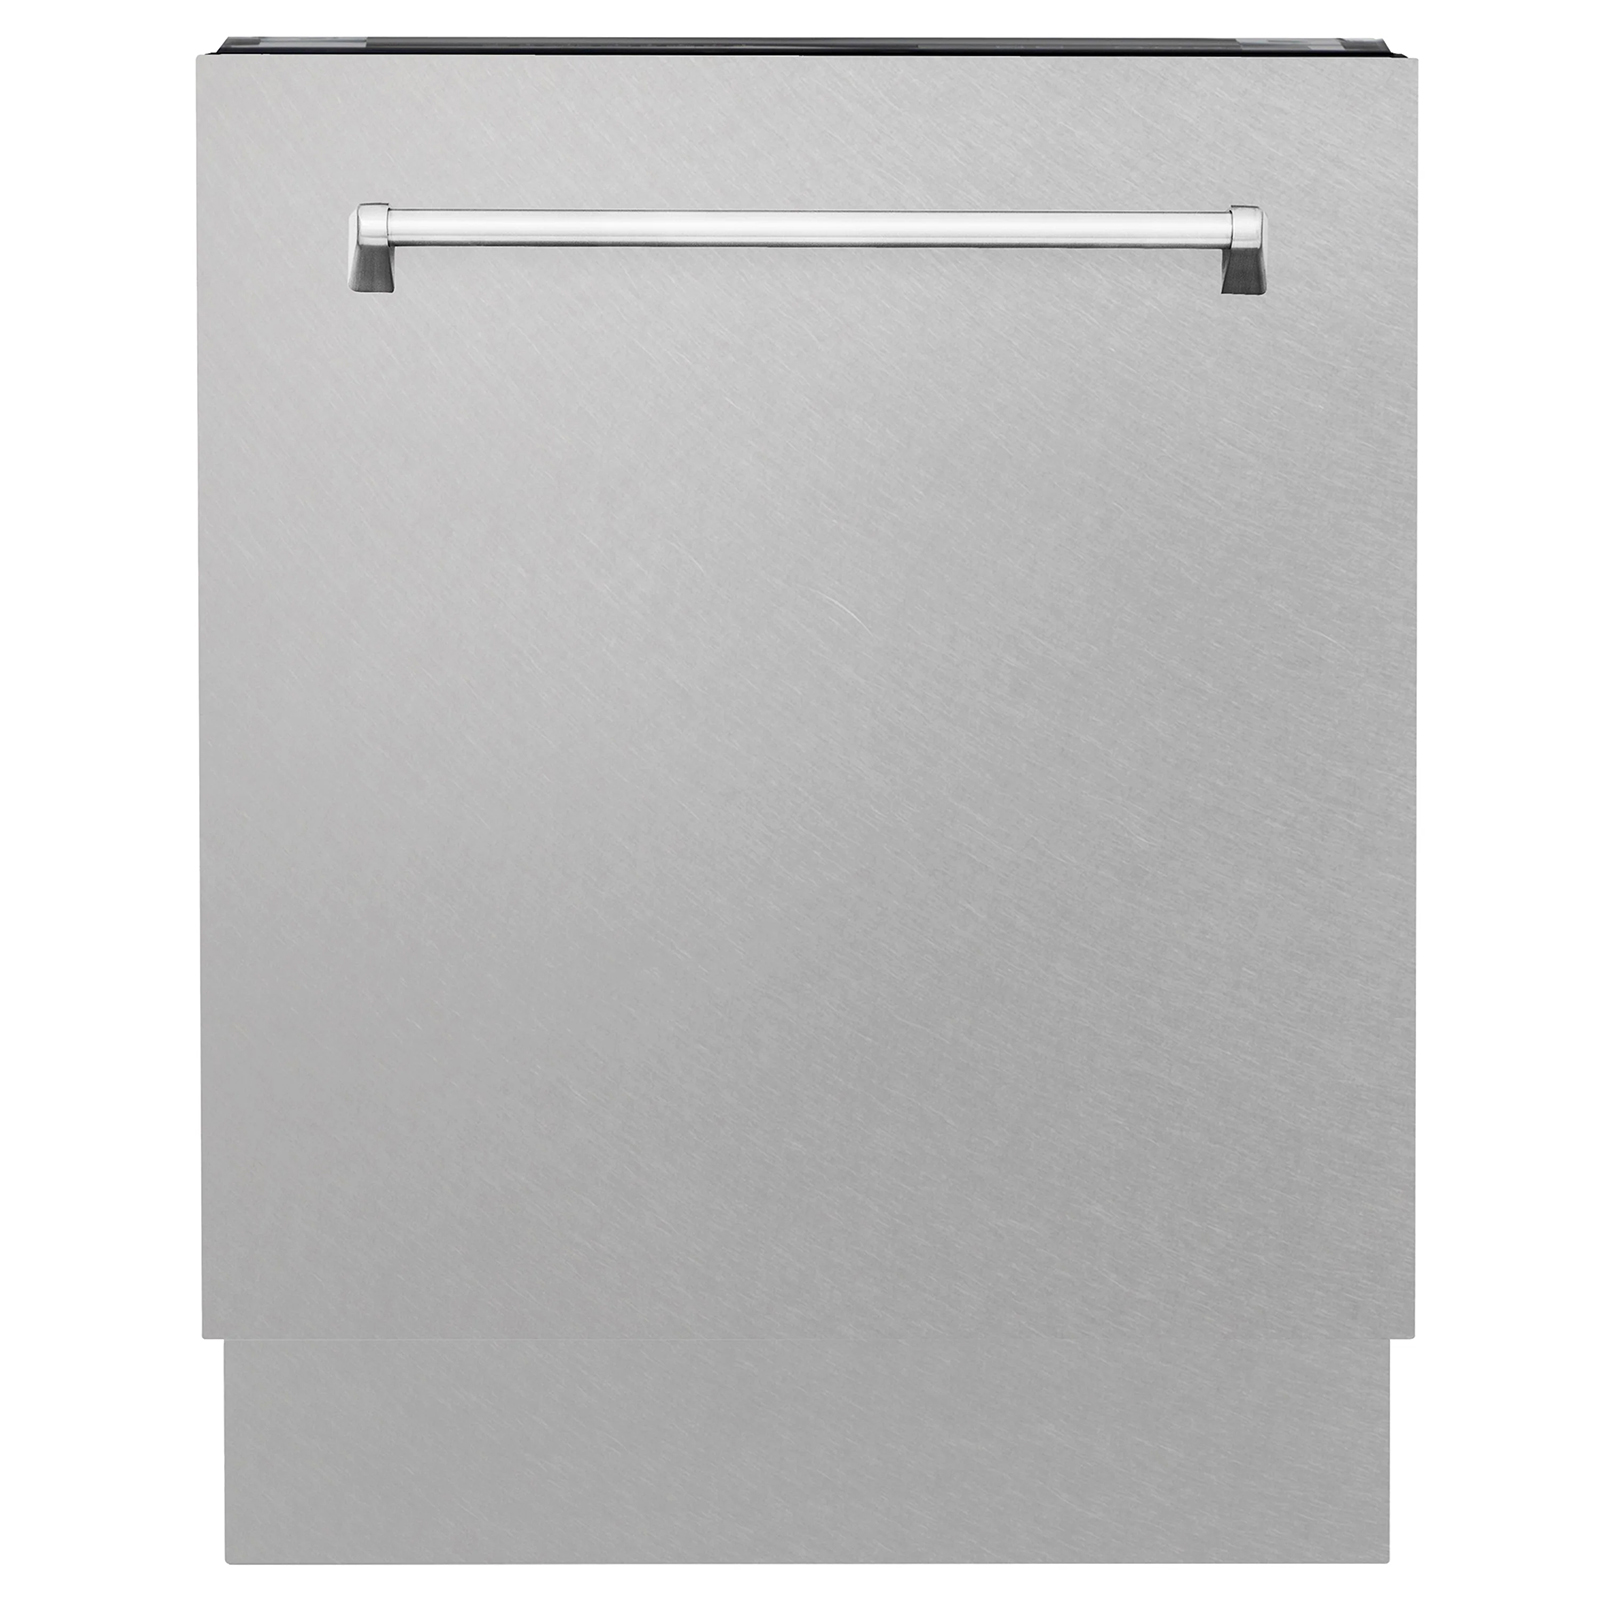 Zline Kitchen and Bath DWV-BG-24 Tallac Series 24” Built-In Dishwasher